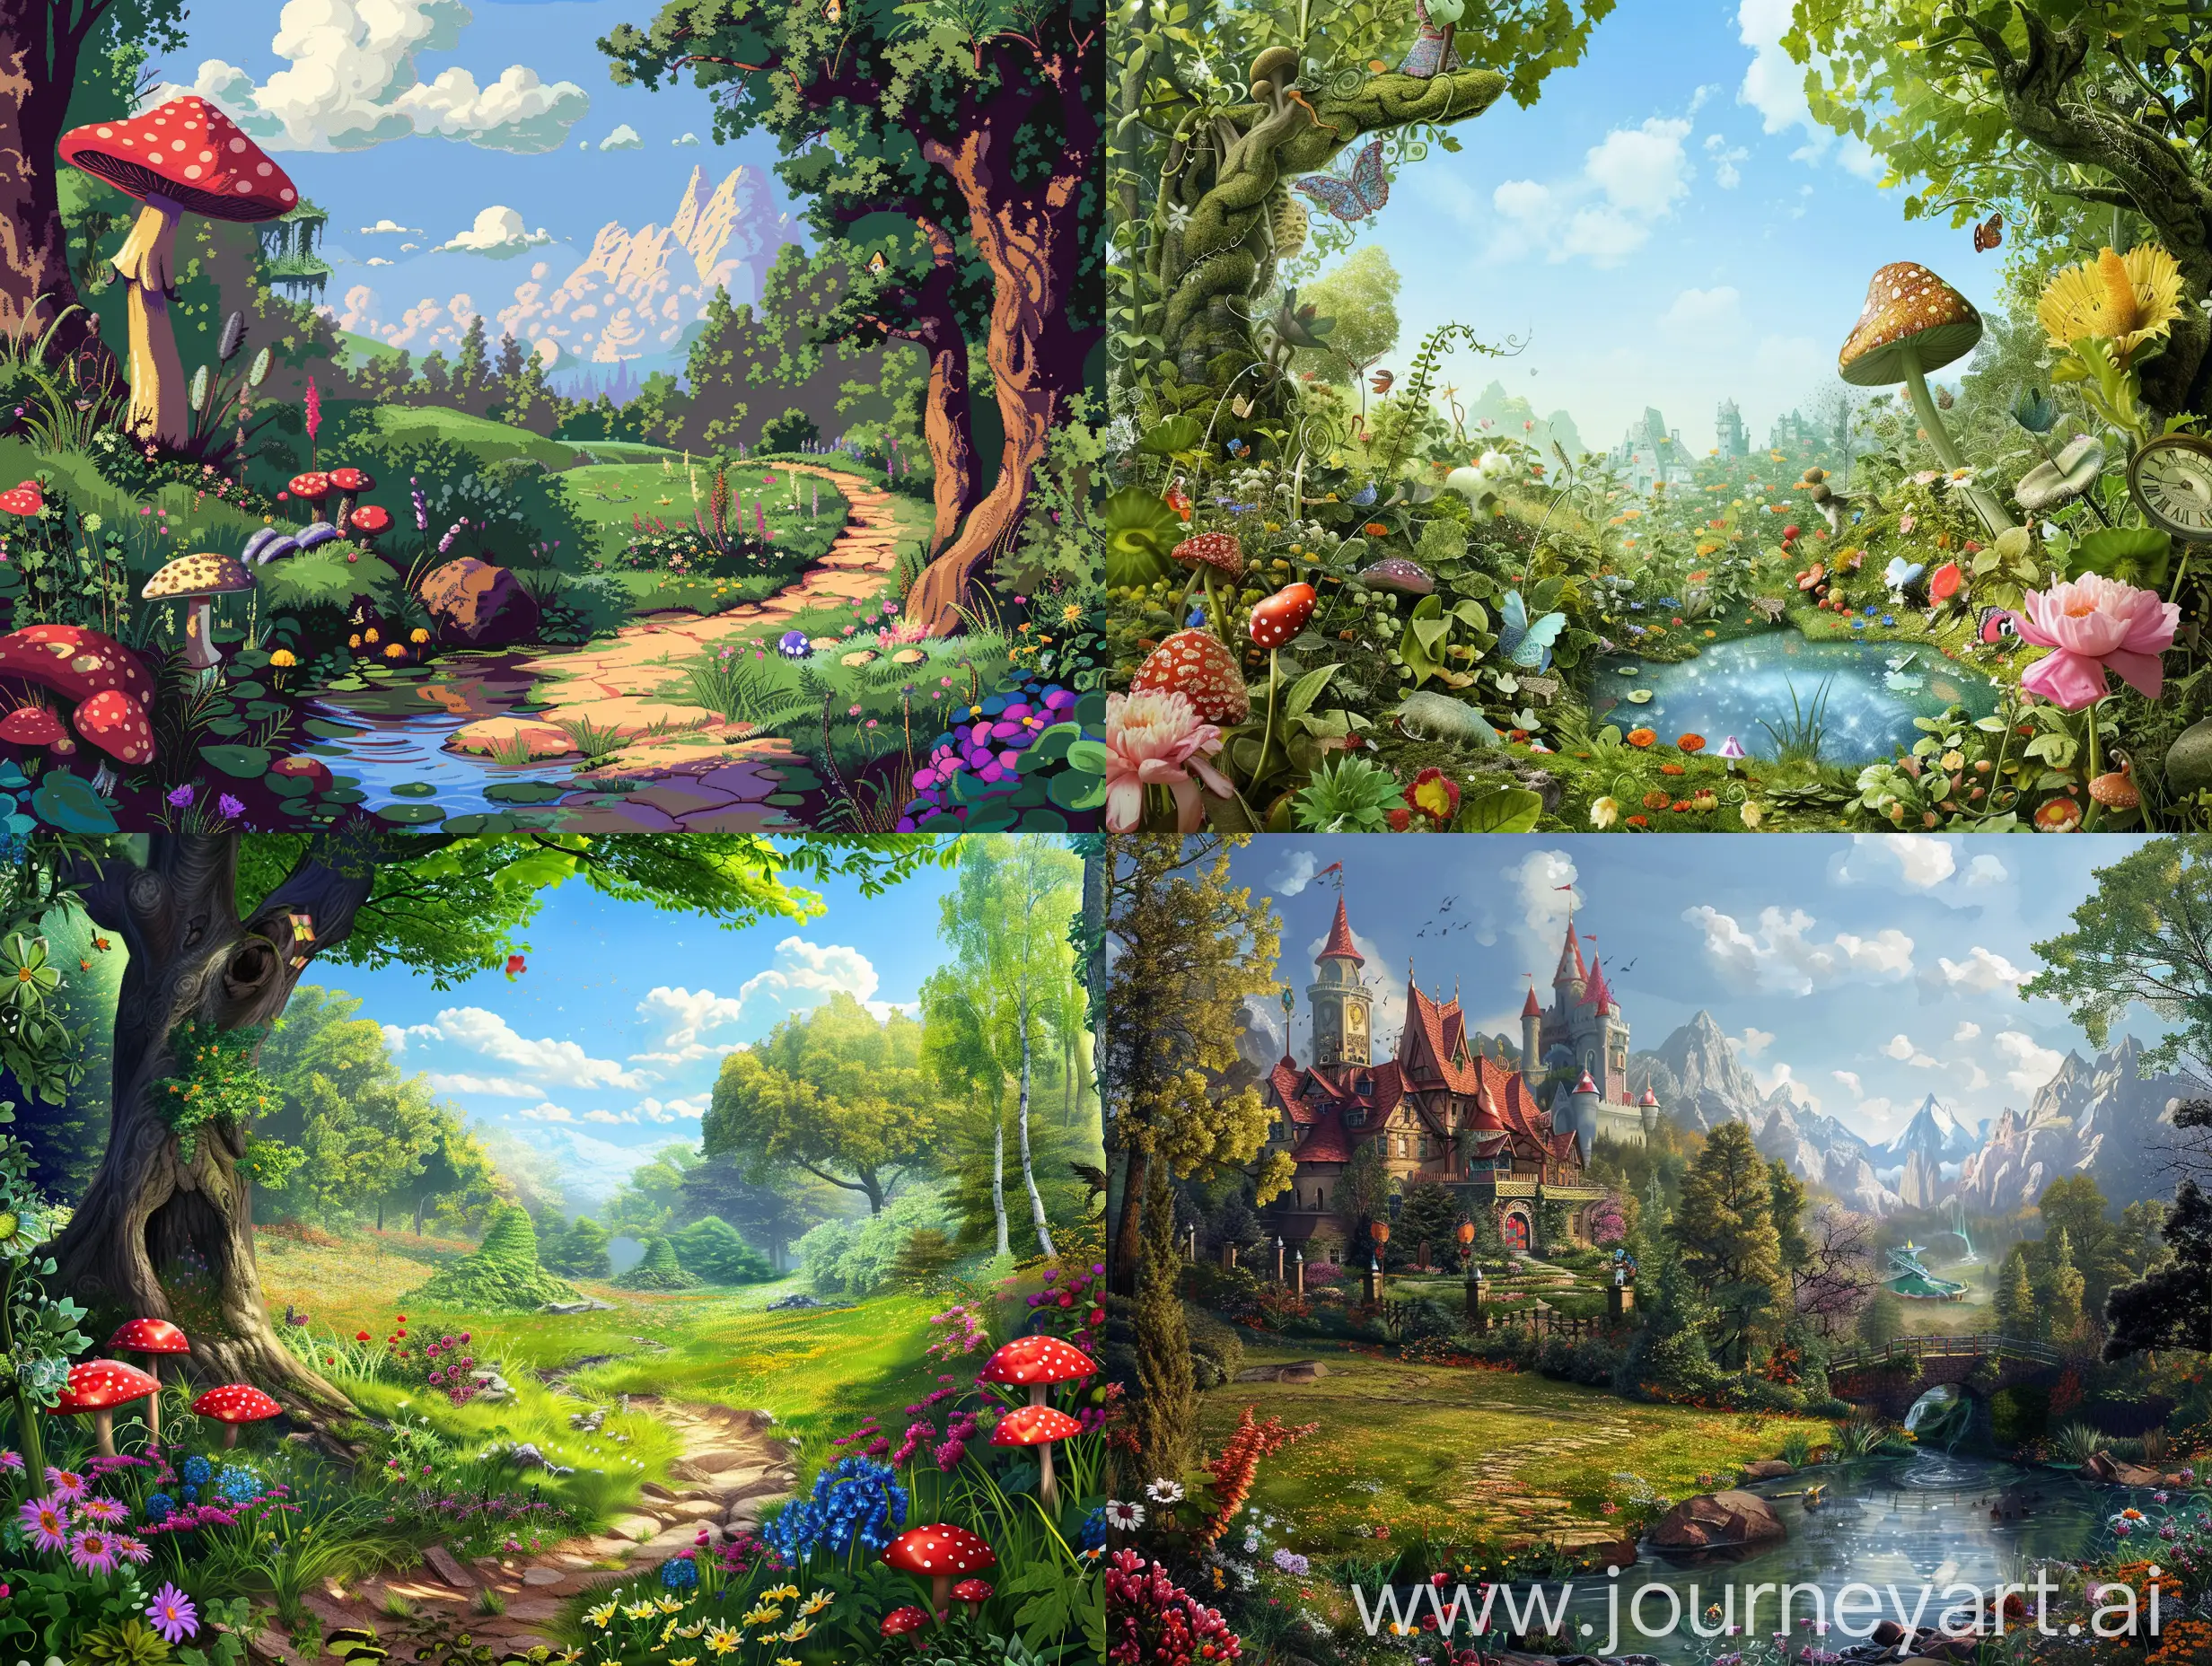 Un paysage type Alice au Pays des merveilles en haute qualité, sans personnage